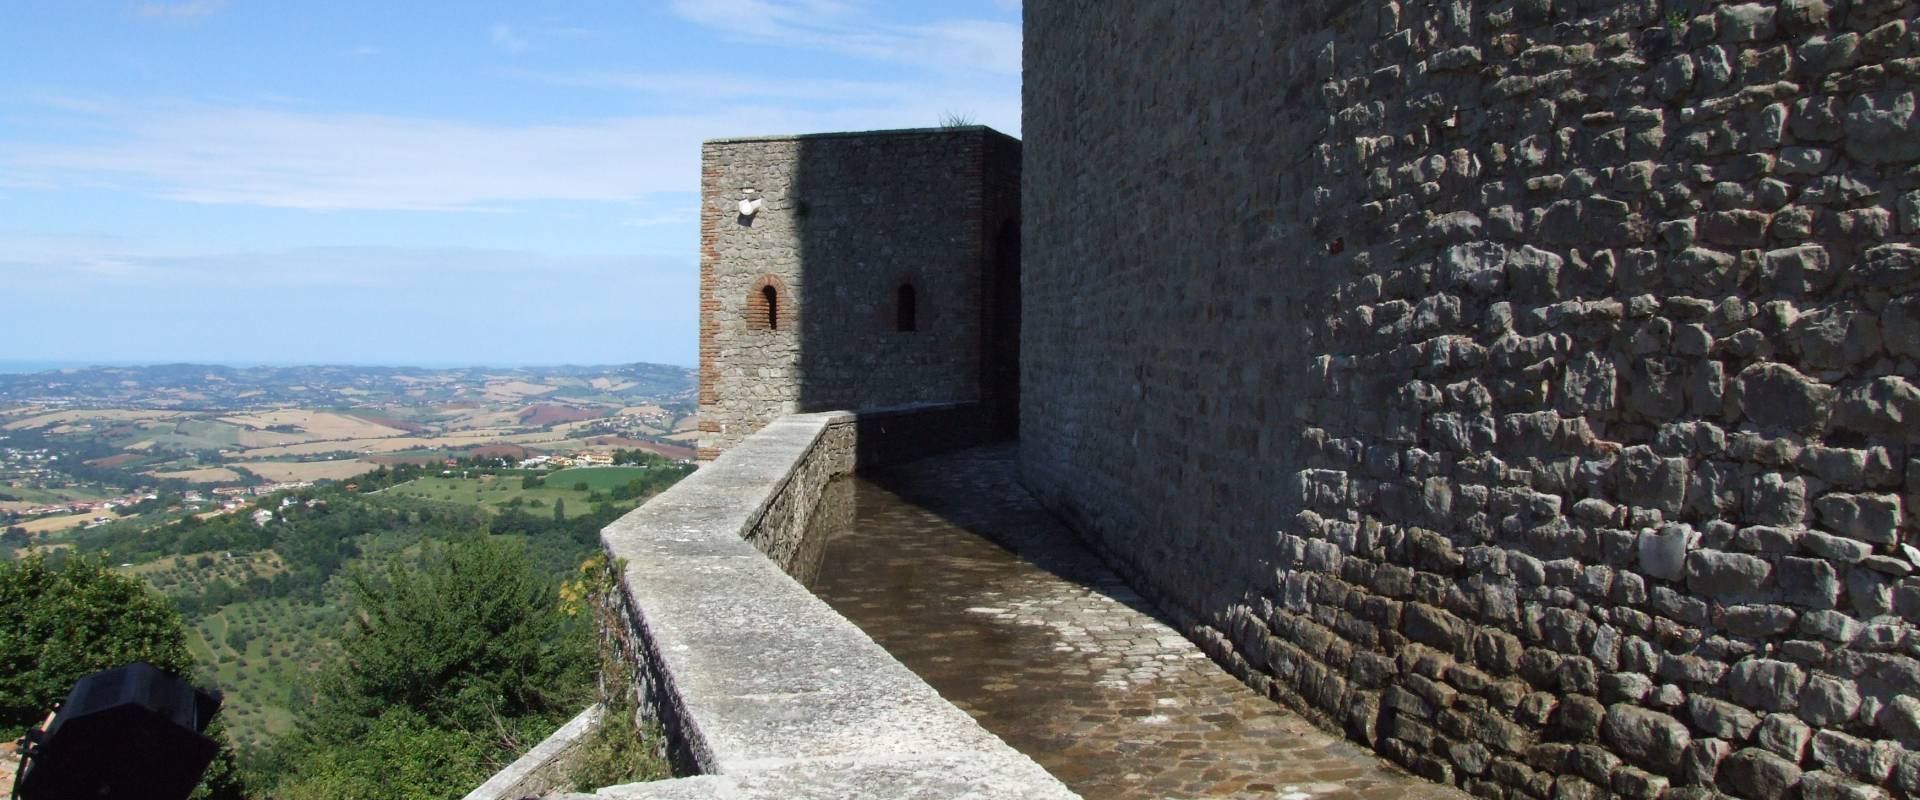 Rocca Malatestiana - Montefiore Conca 15 photo by Diego Baglieri